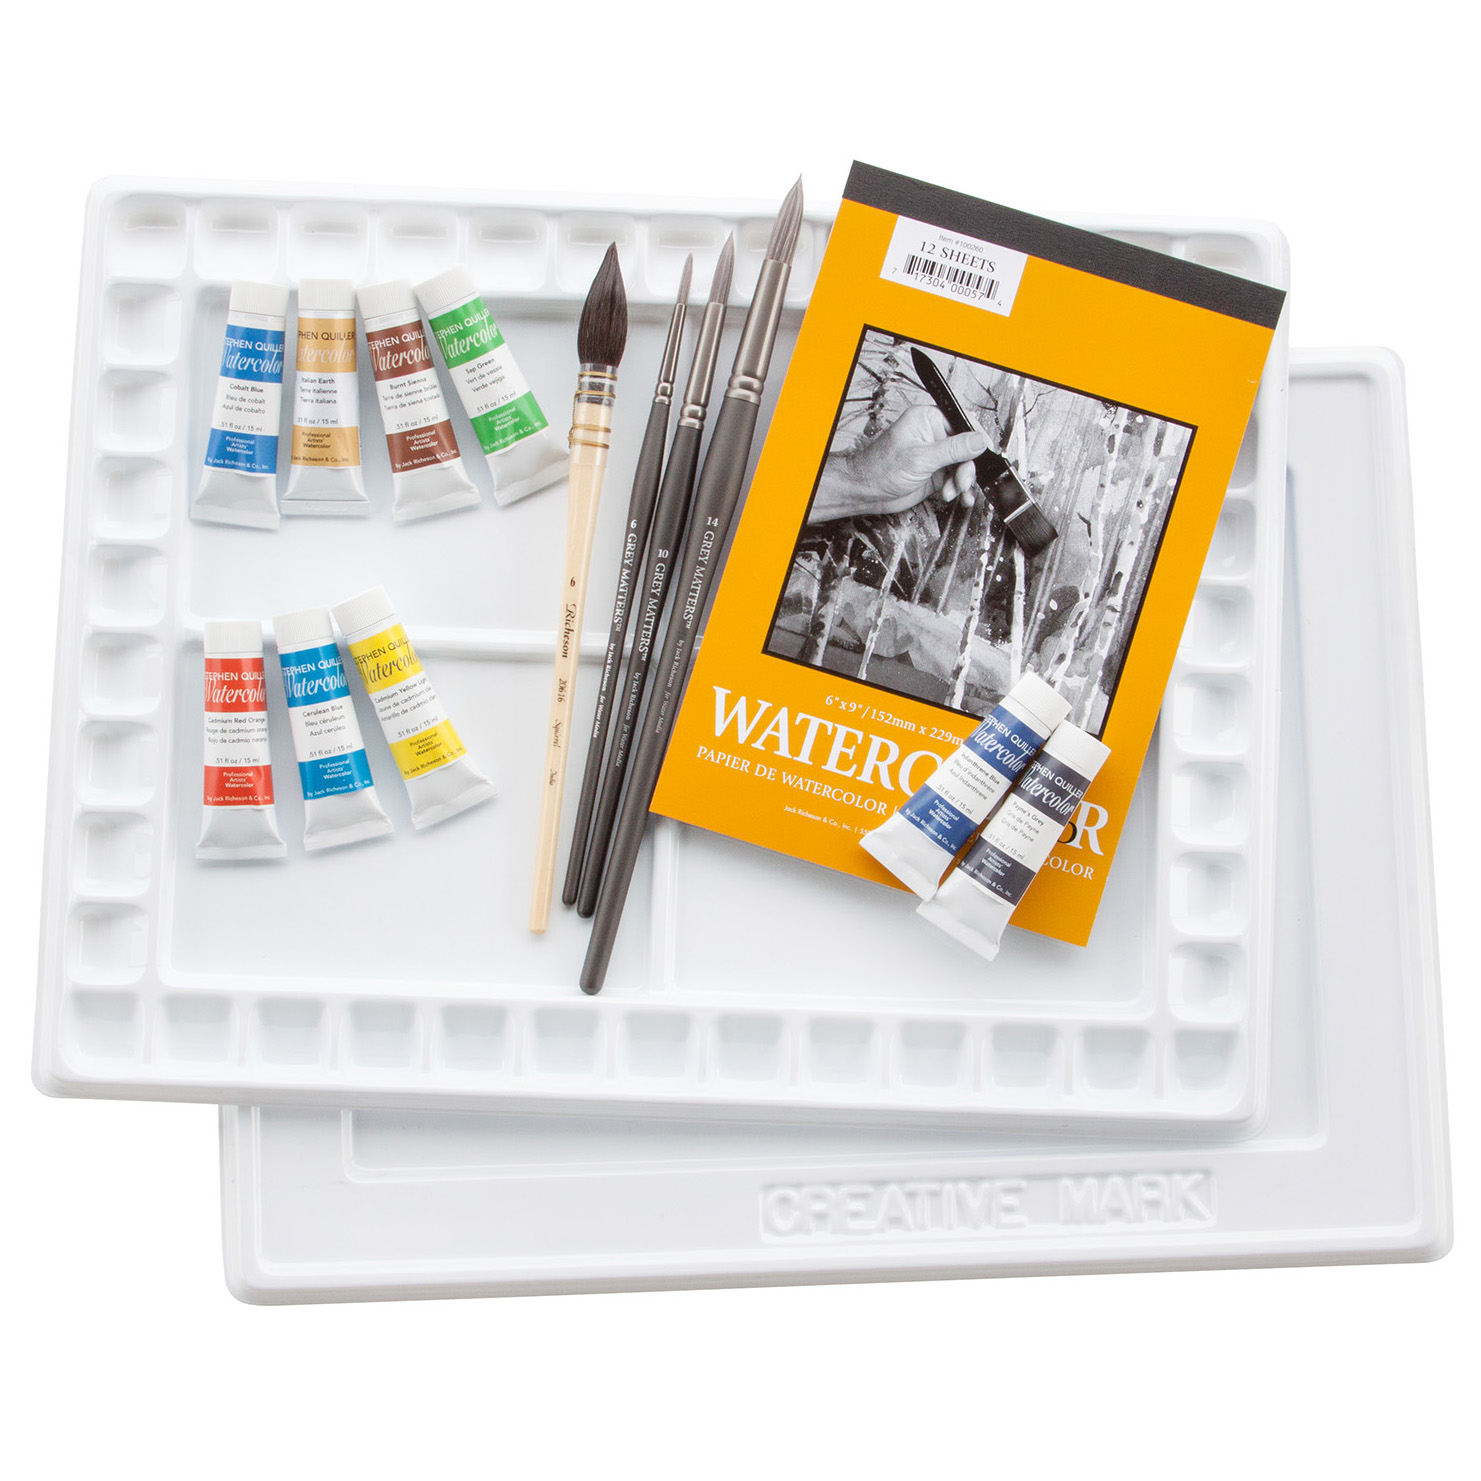 AE001 Andy Evansen Watercolor Workshop Kit